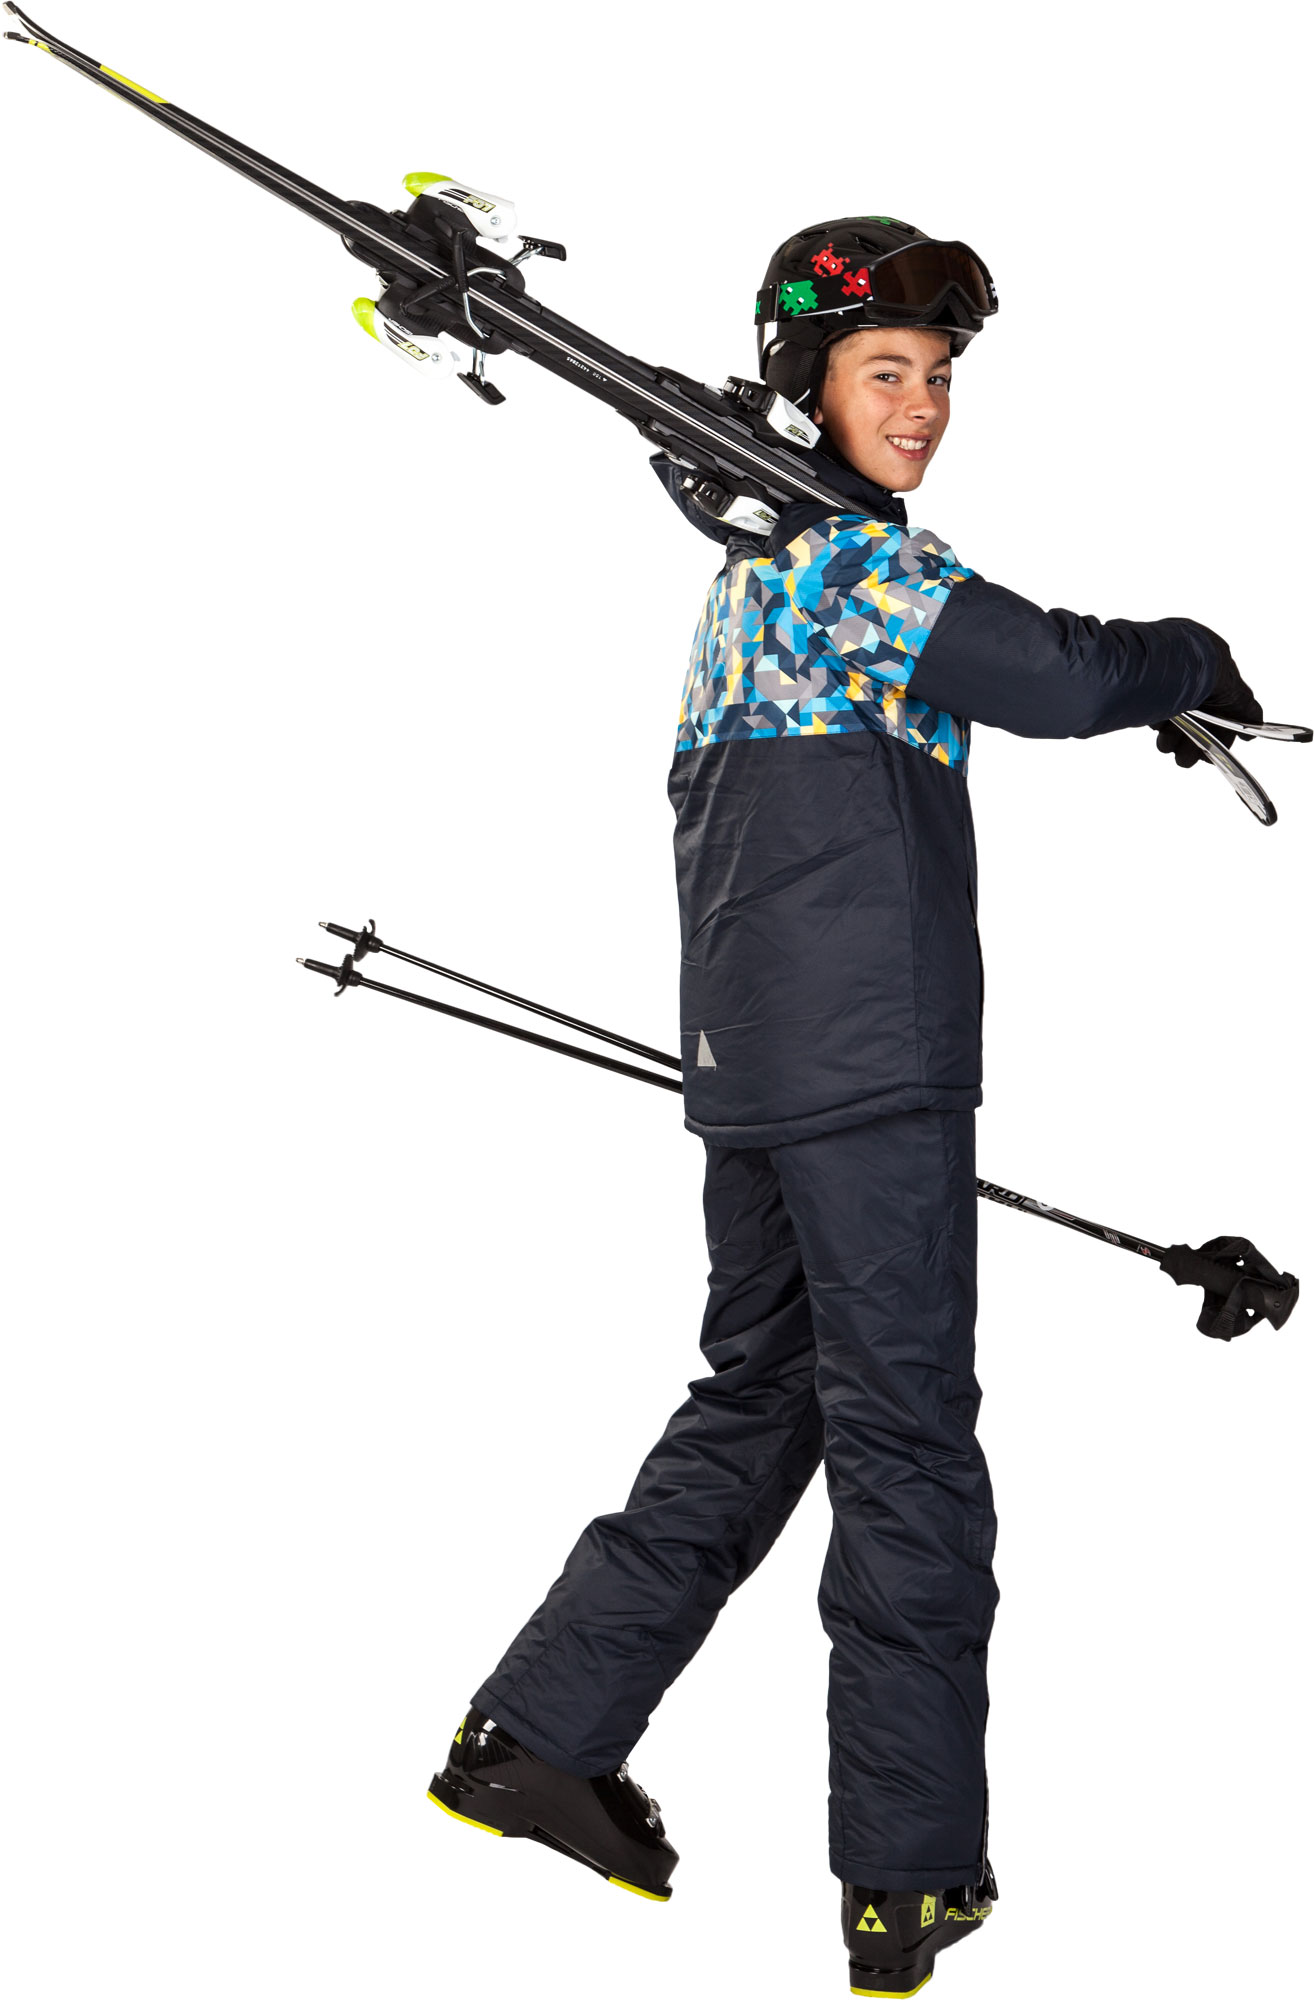 ARAS - Boys' Ski Jacket